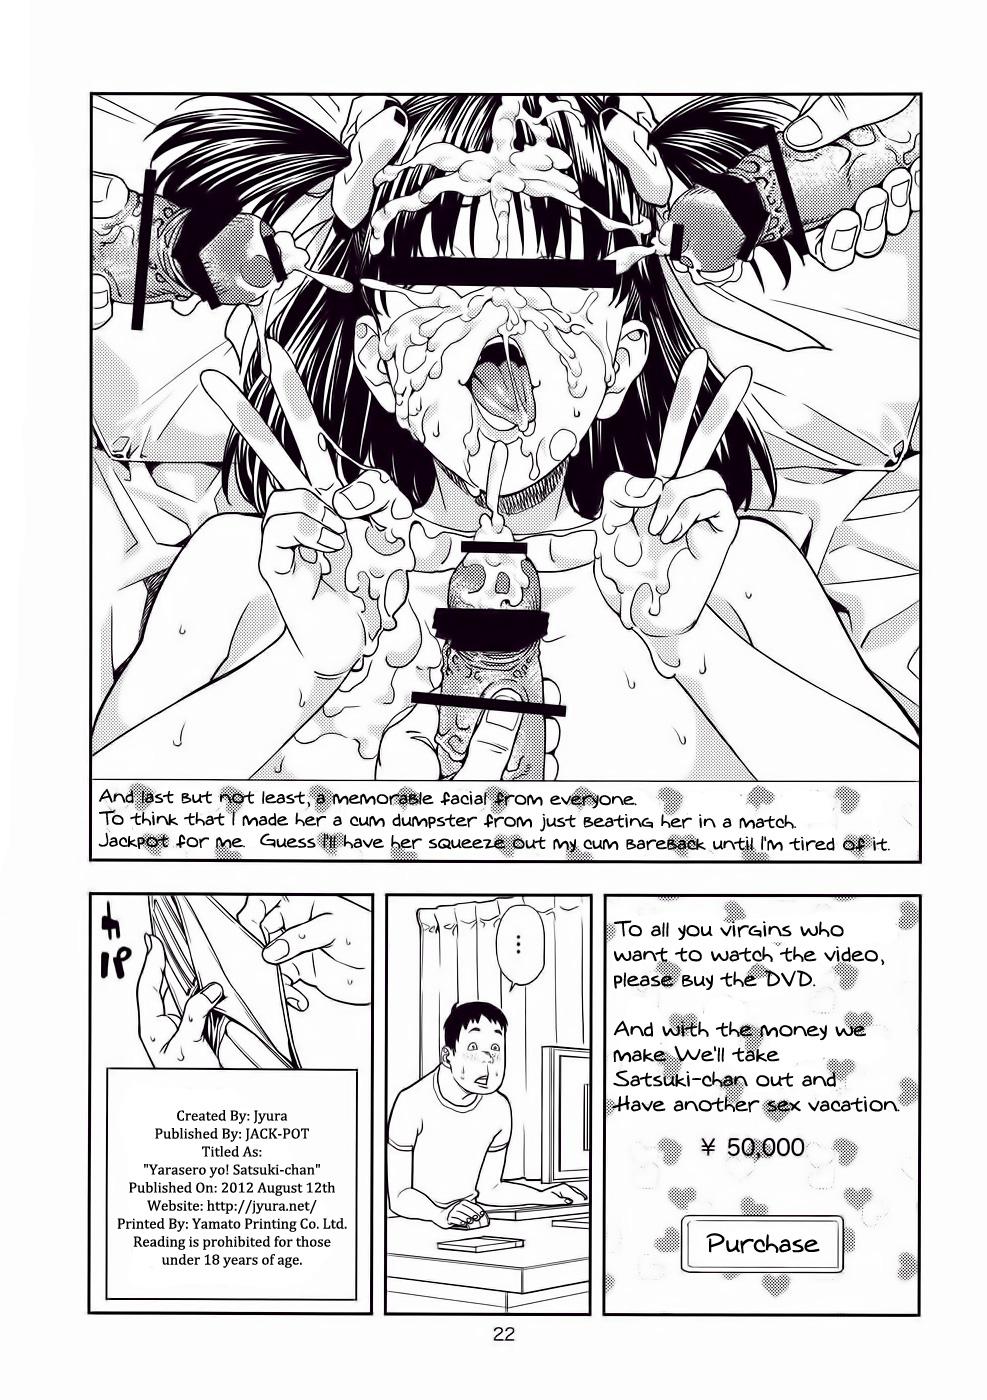 Gaping Yarasero yo! Satsuki-chan - Tsukiatte yo satsuki-chan Sensual - Page 21